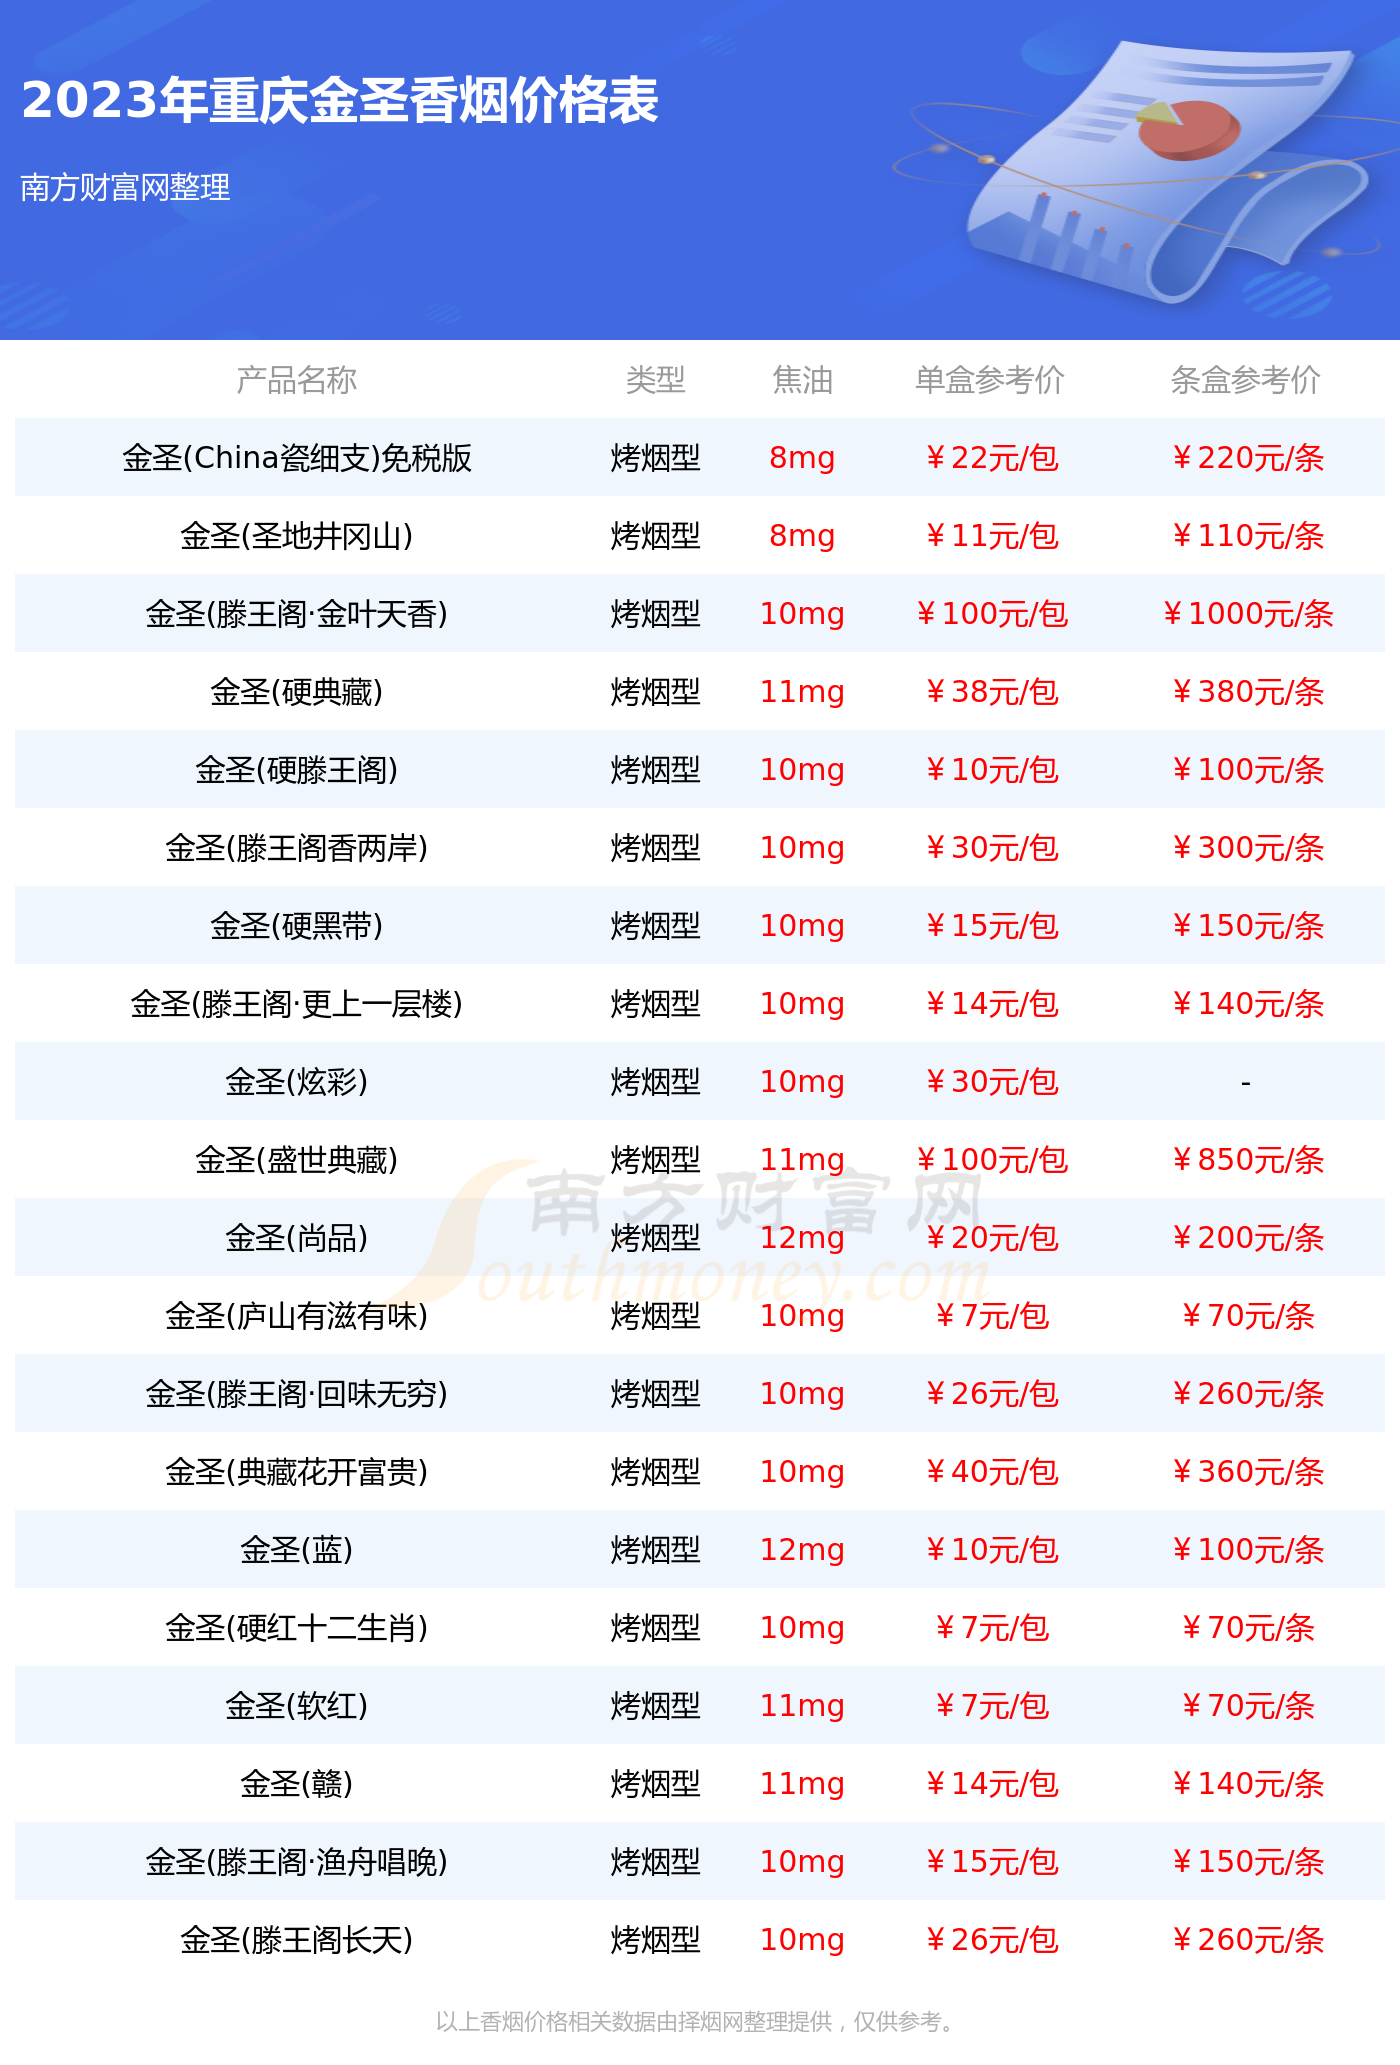 重庆金圣香烟价格多少一包2023价格一览表